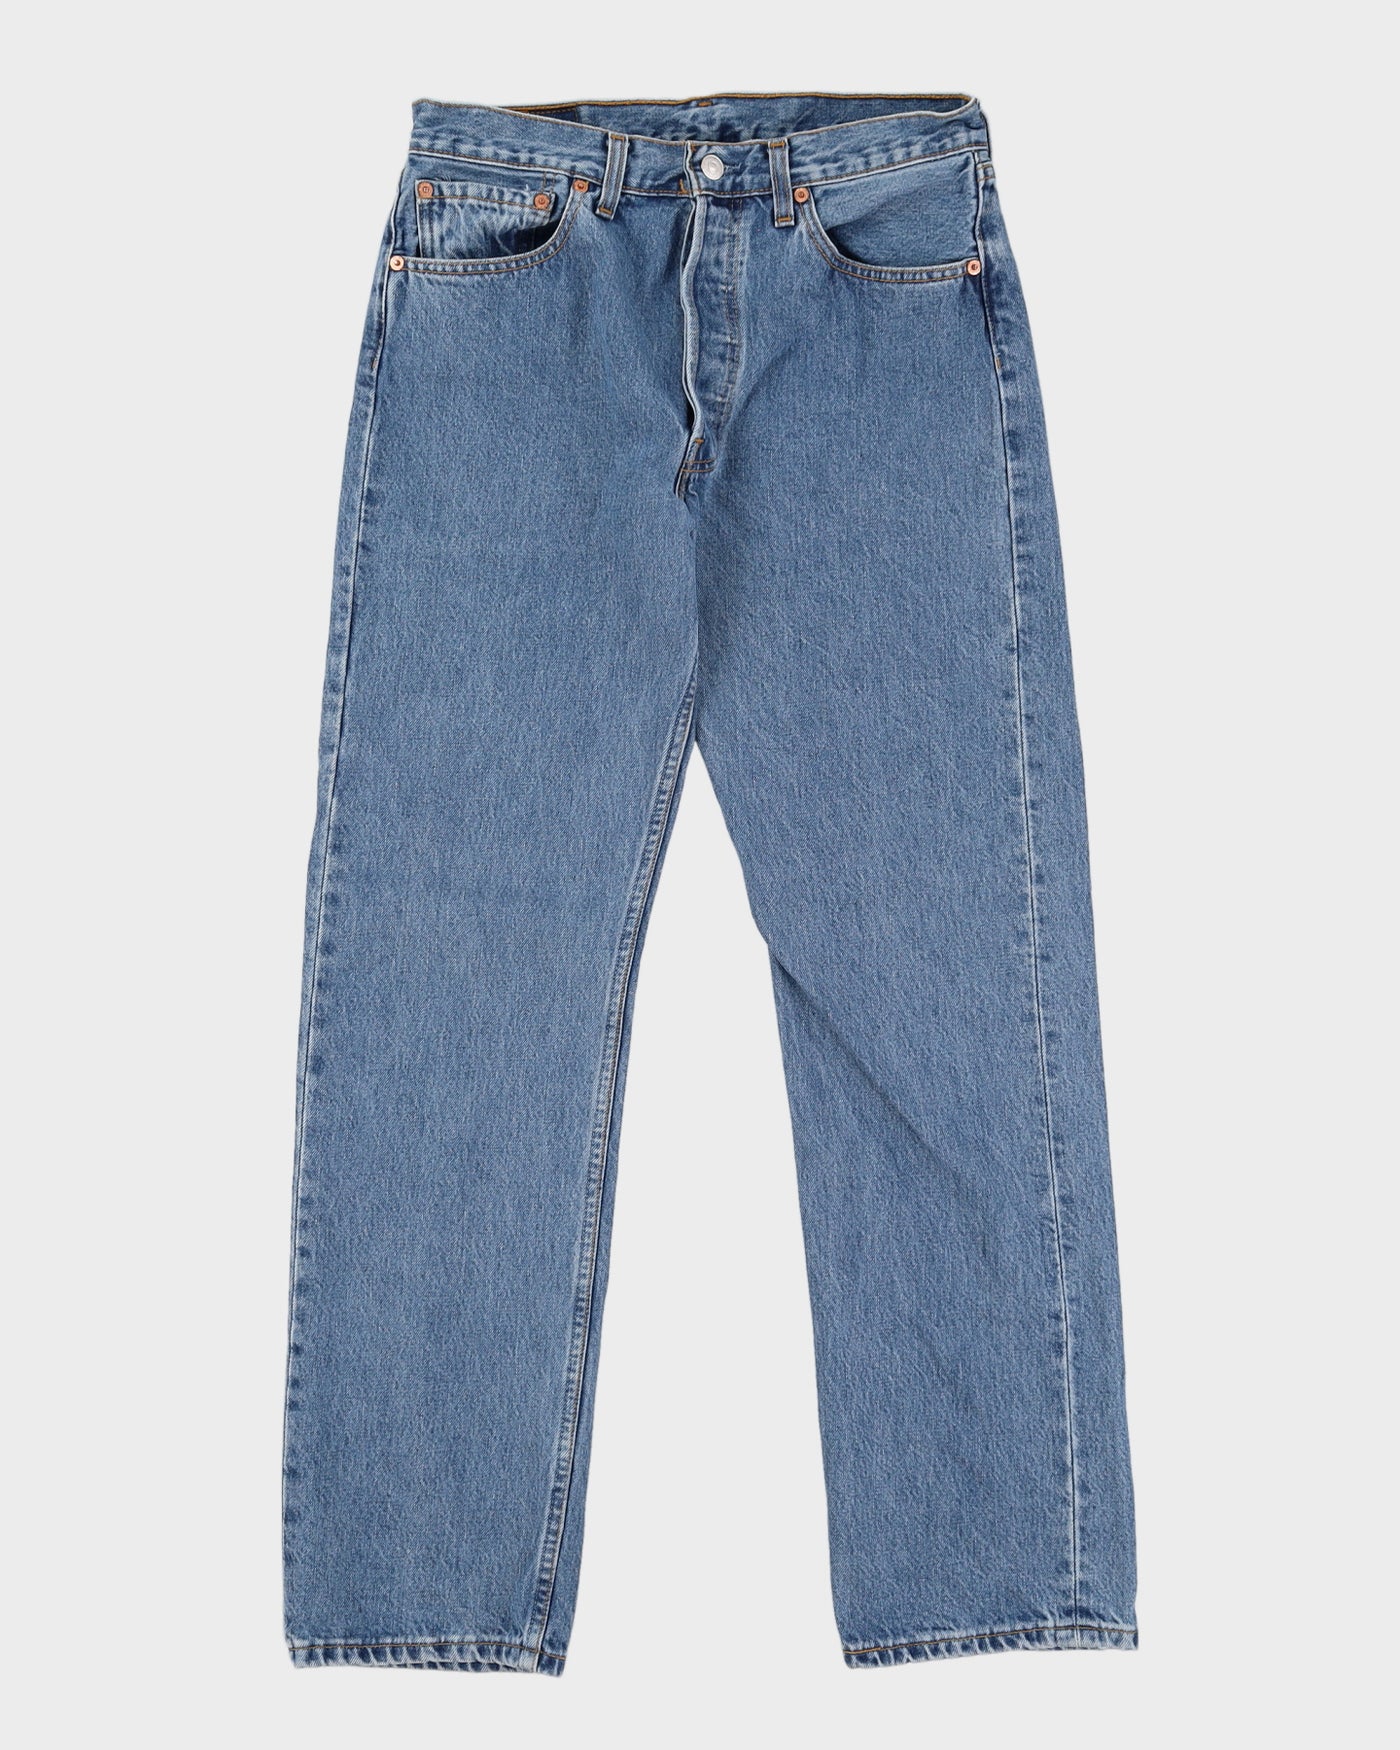 Vintage 90s Levi's 501 Blue Jeans - W30 L31